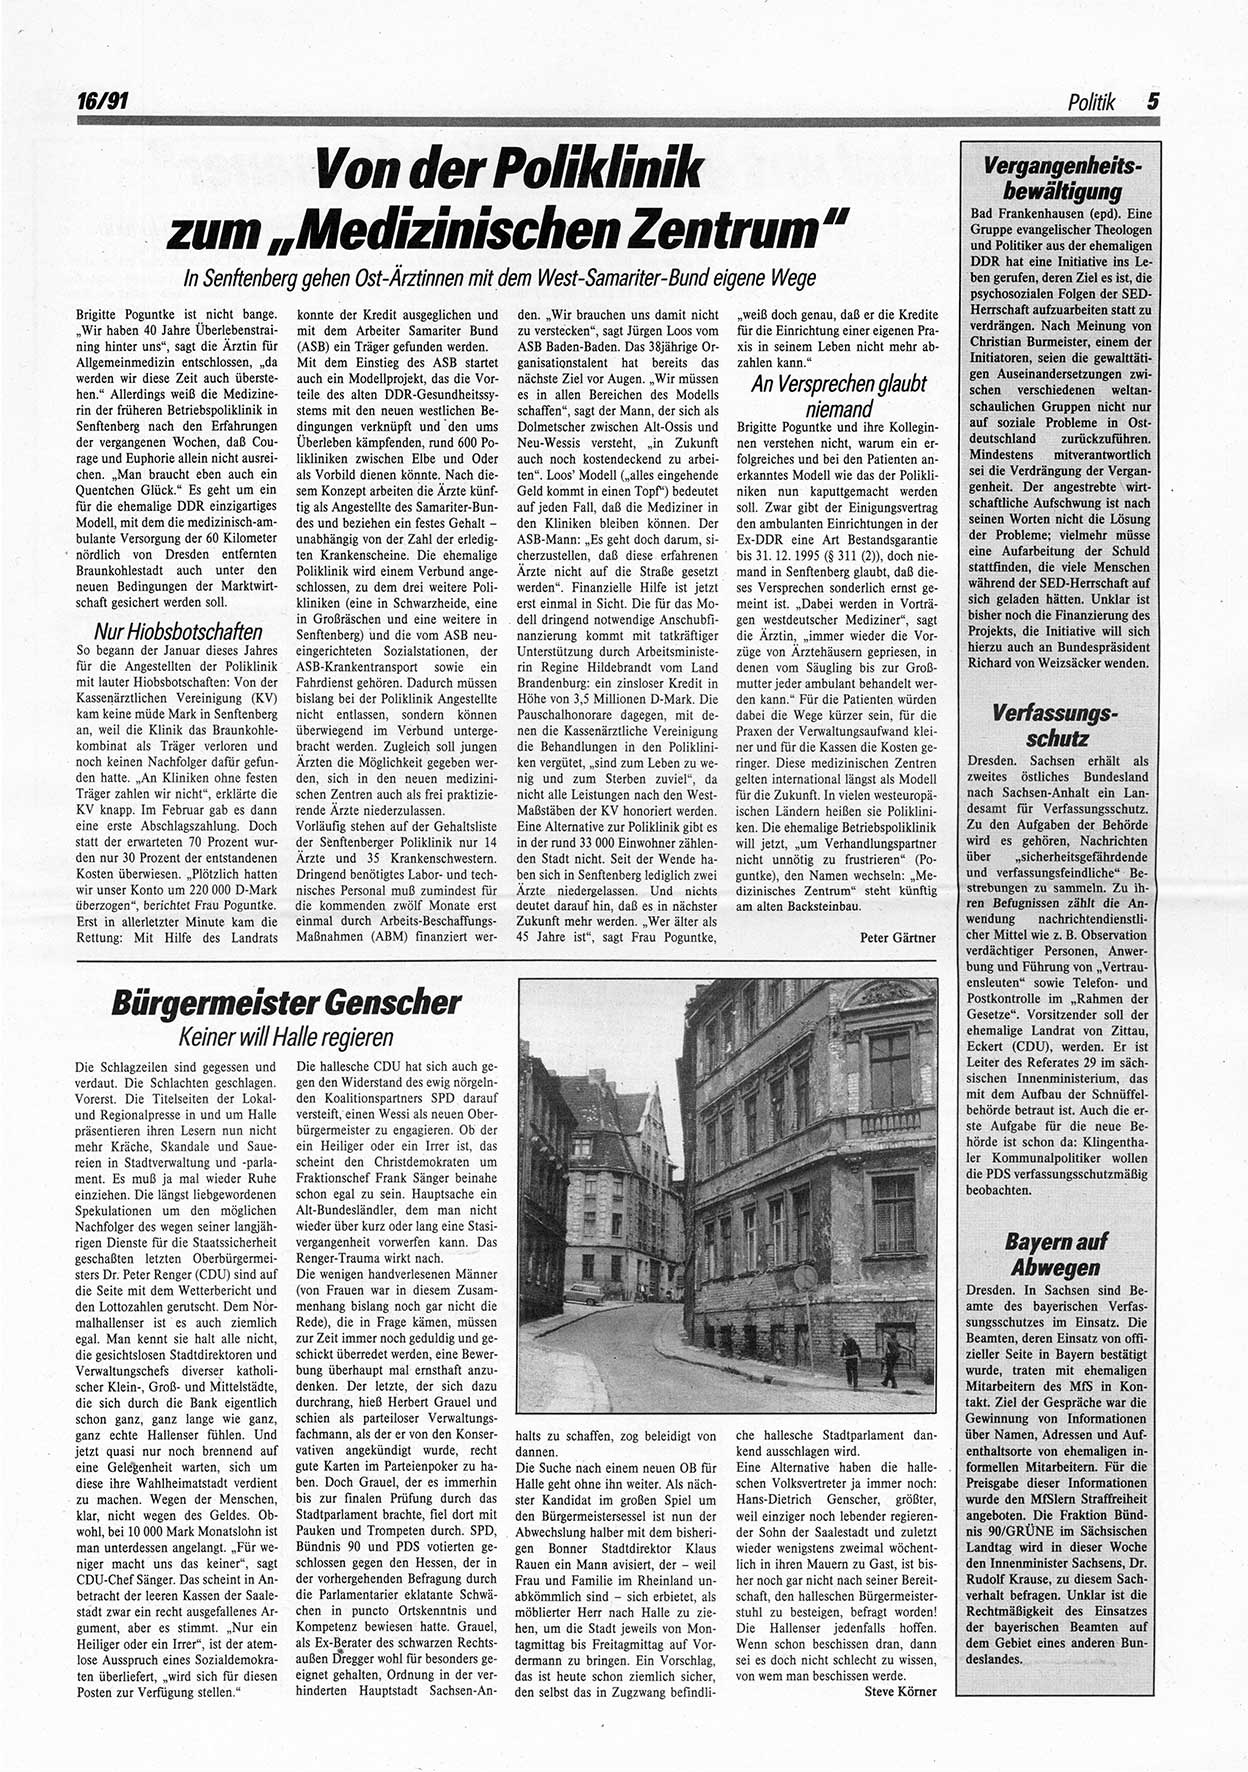 Die Andere, Unabhängige Wochenzeitung für Politik, Kultur und Kunst, Ausgabe 16 vom 17.4.1991, Seite 5 (And. W.-Zg. Ausg. 16 1991, S. 5)